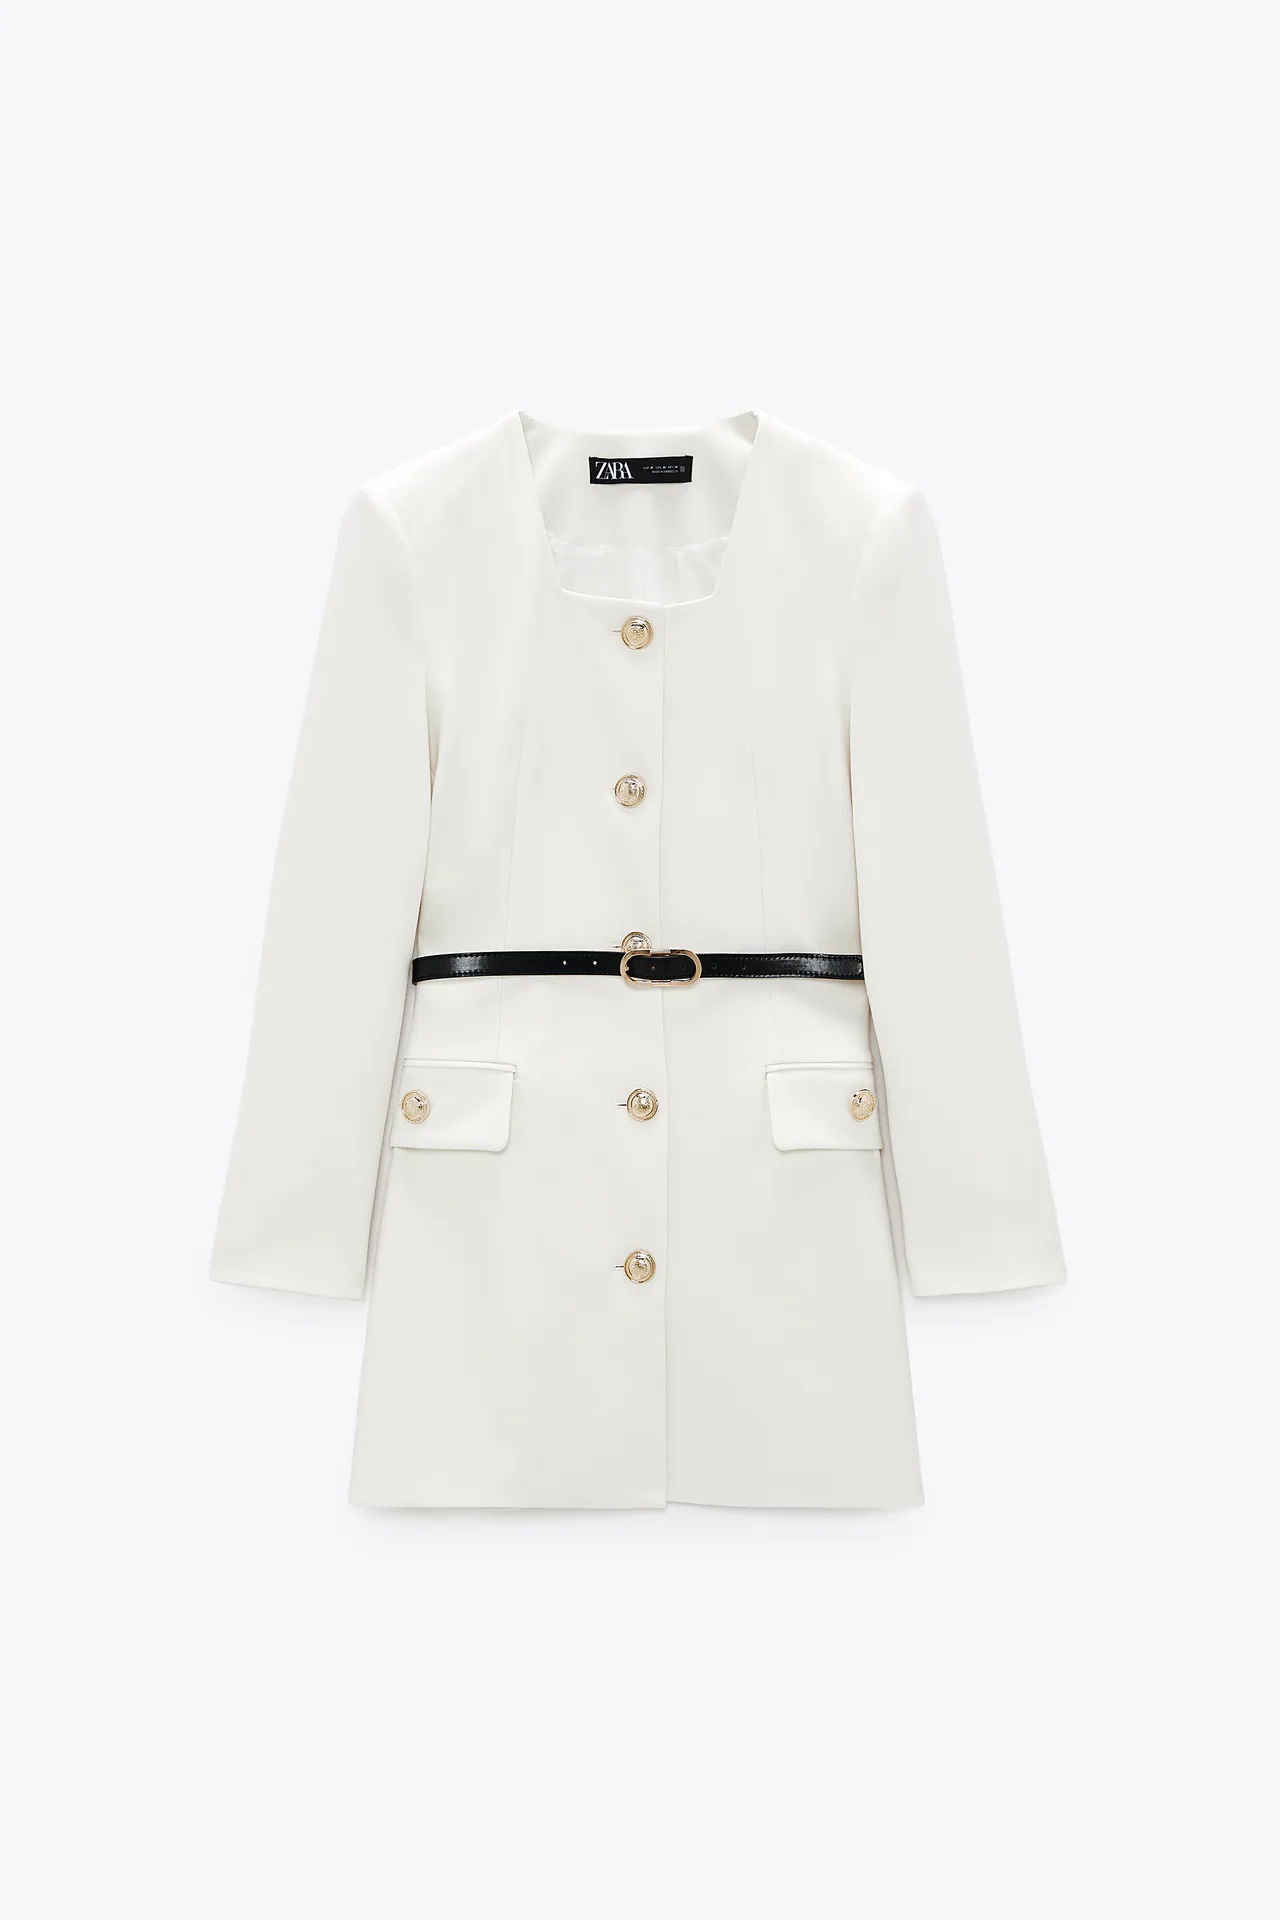 solo Correctamente Personalmente Zara clona el vestido blazer blanco más bonito de la nueva colección de YSL